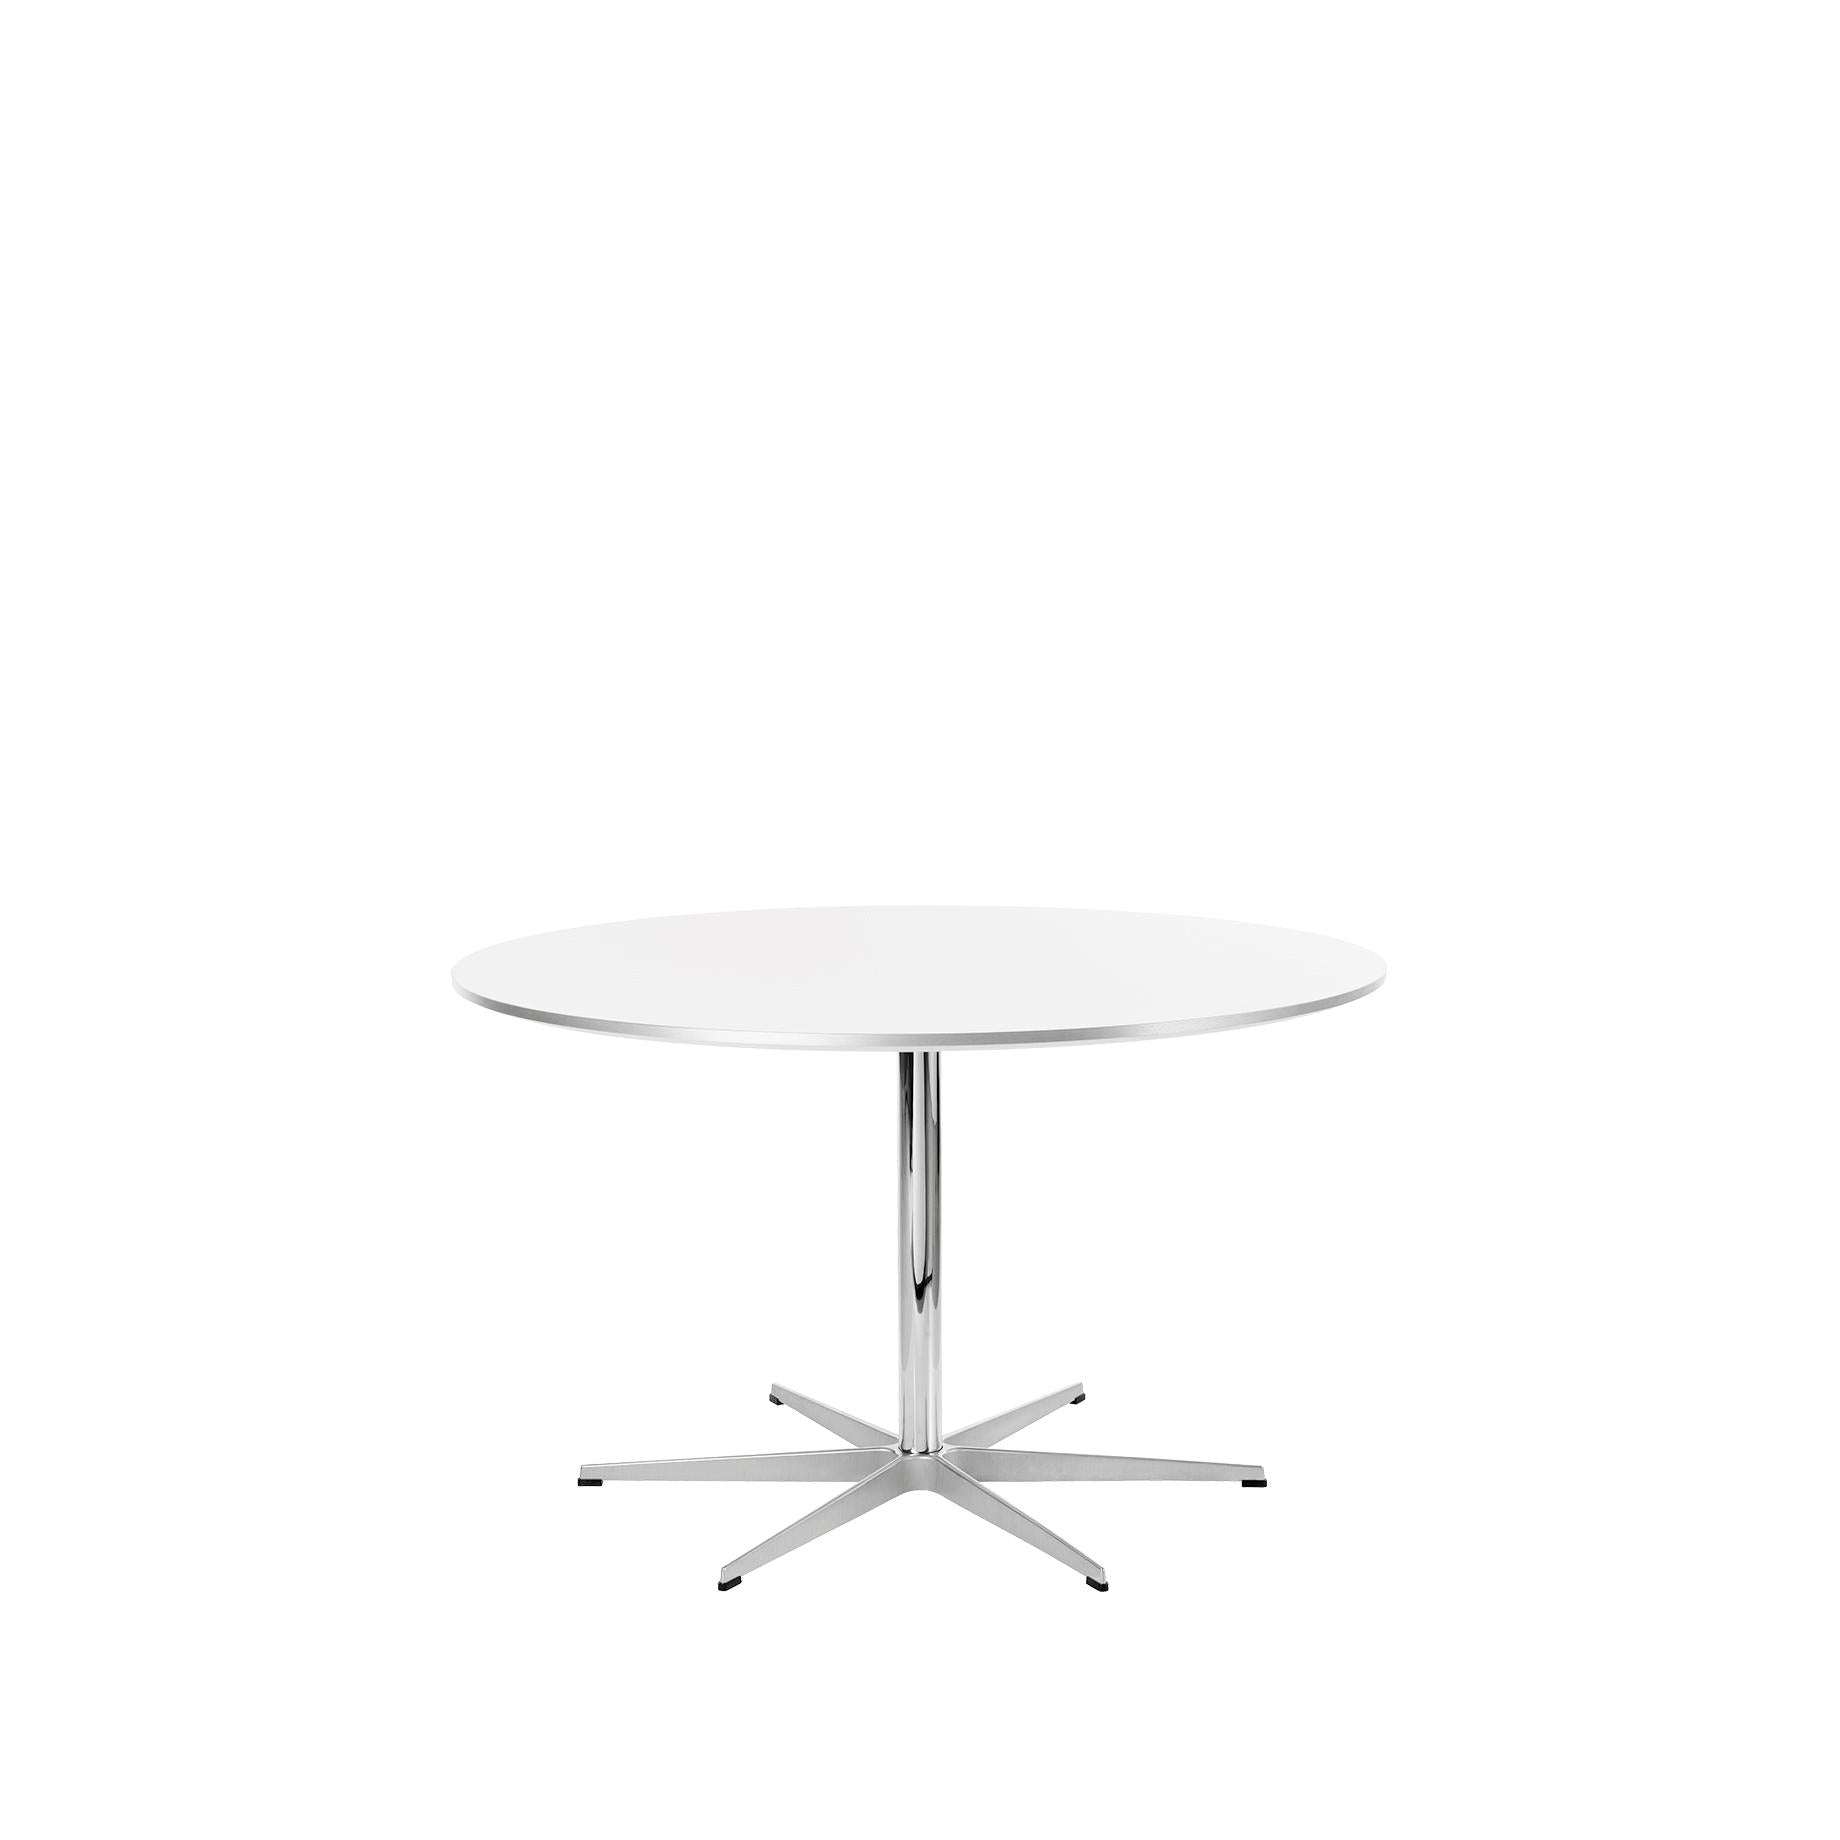 Kruhový stůl Fritz Hansen Ø120 cm, bílý laminát